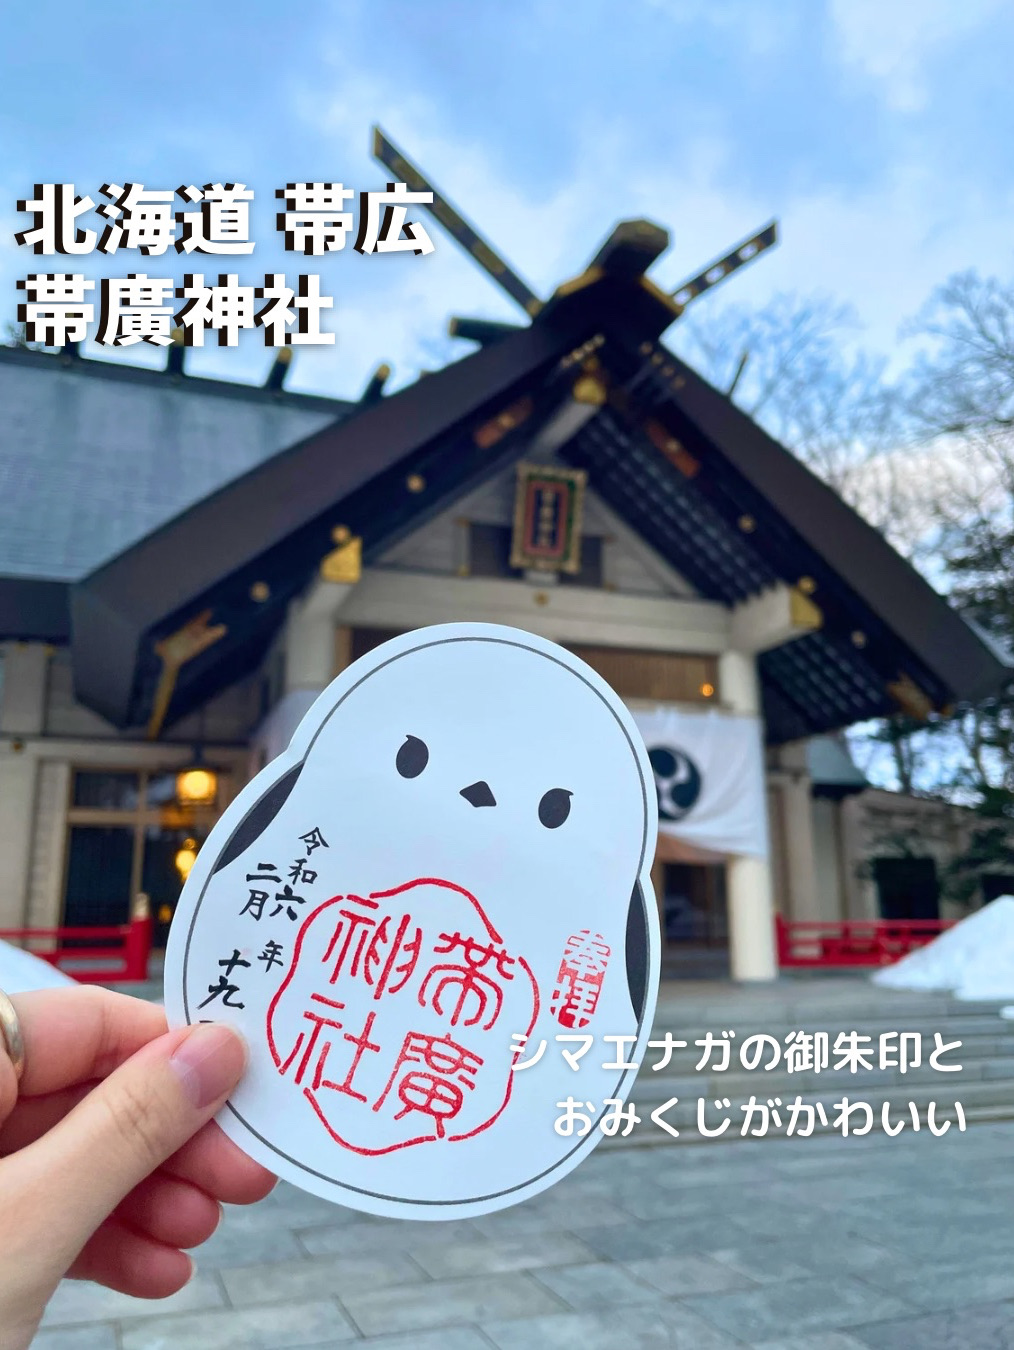 [北海道带广] Shimaenaga 的红戳和神签很可爱⛩️带广神社